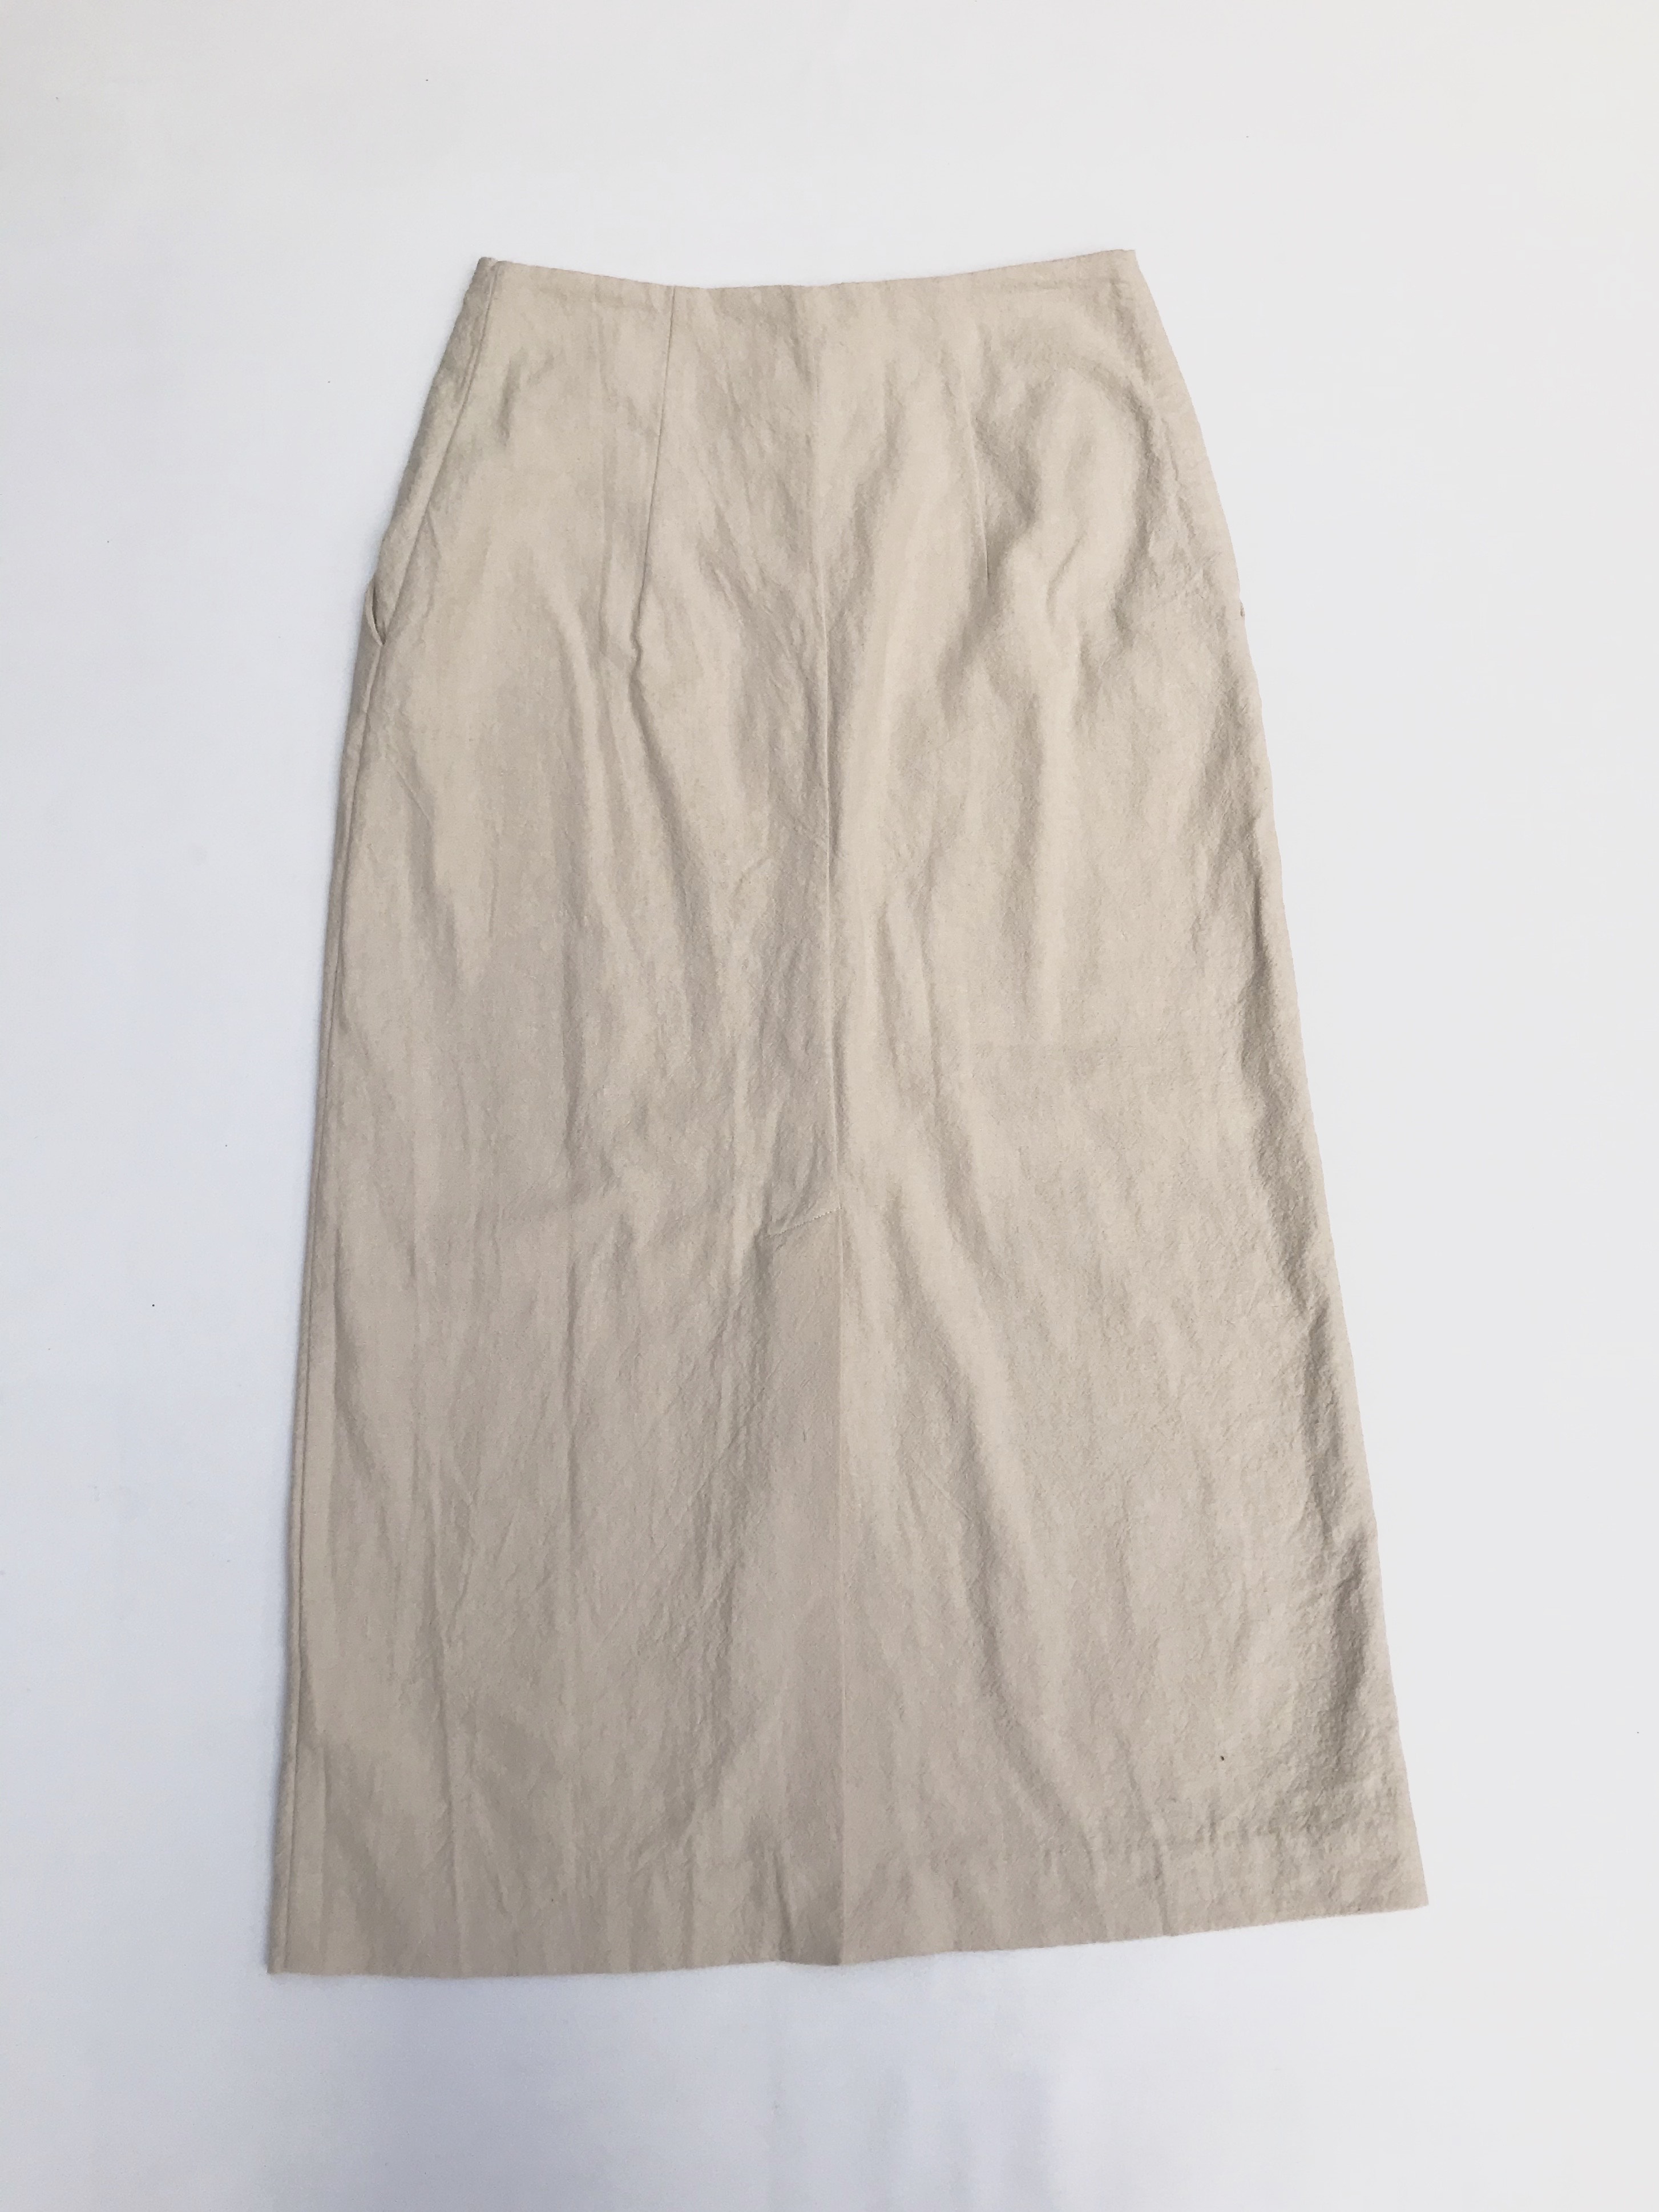 Falda larga H&M 54% lino 46% algodón crema, bolsillos laterales, fila de botones al centro y aberturas en la basta. Precio original S/ 170 Largo 87cm
Talla S